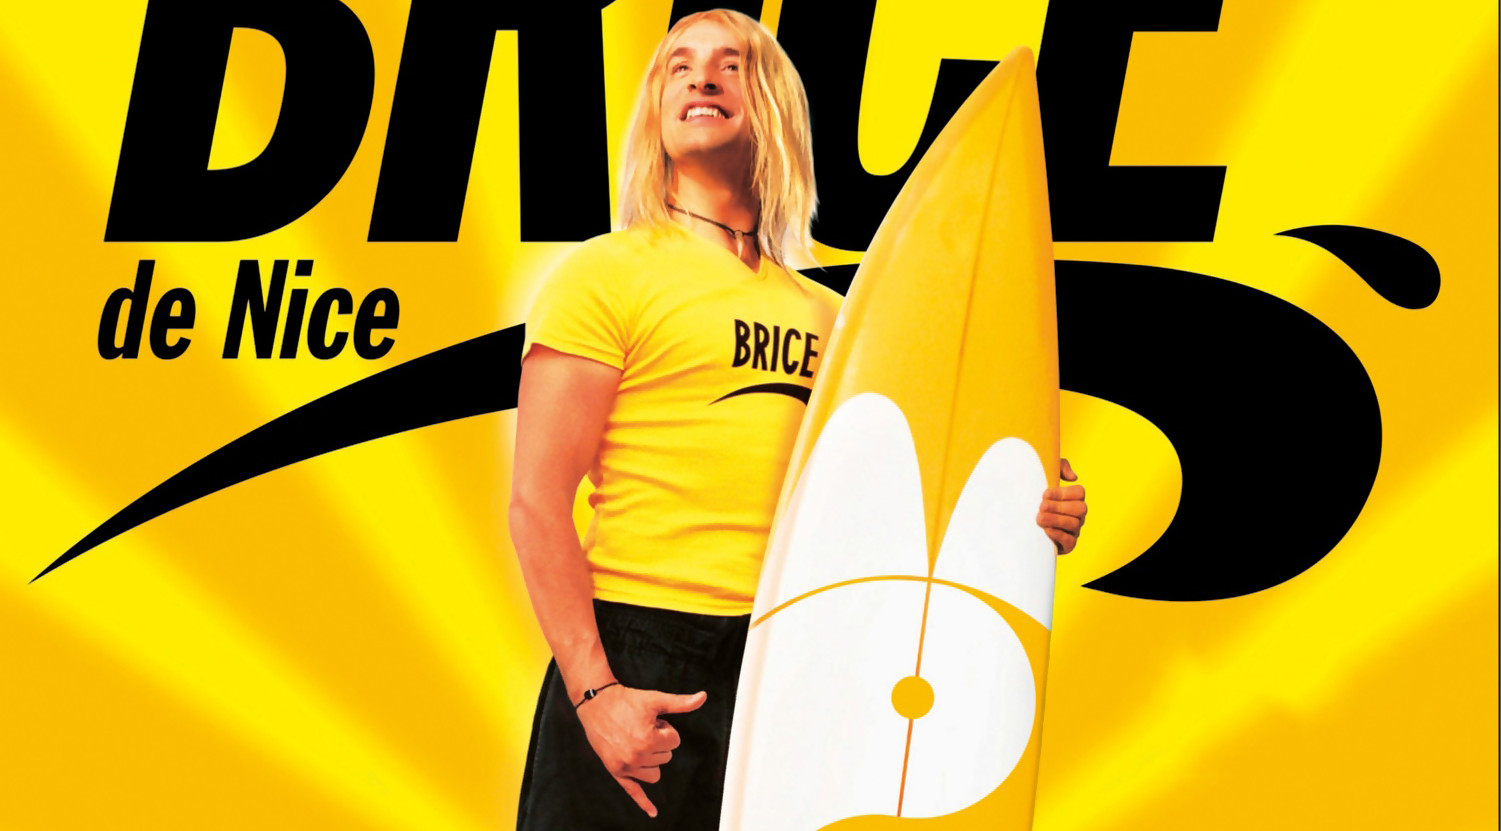 Cliché surf: appeler son pote Brice de Nice